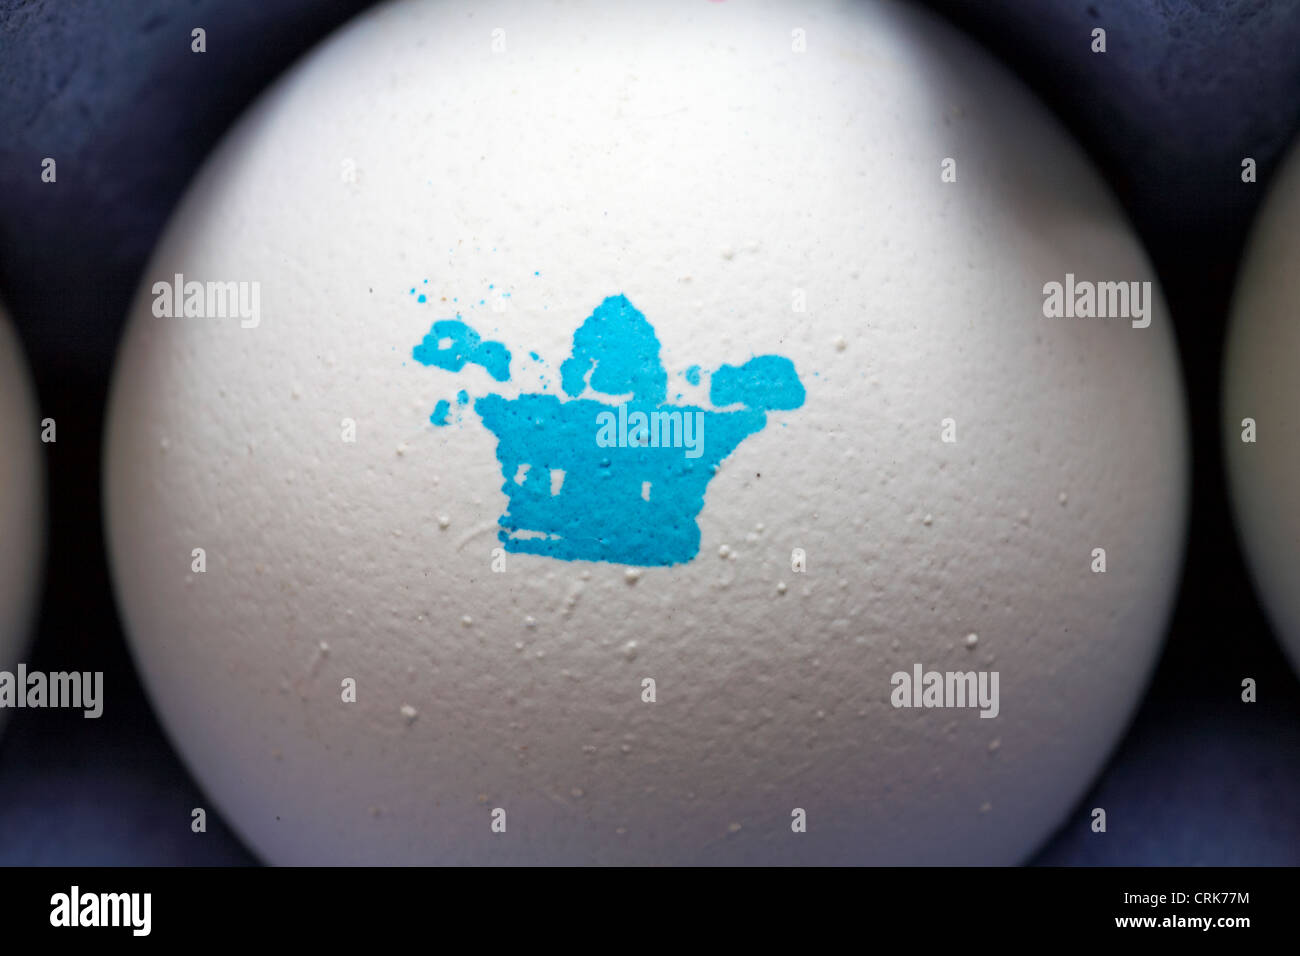 Nahaufnahme des blauen Kronenstempels auf dem Clarence-Hof-Ei in Eierkarton Stockfoto